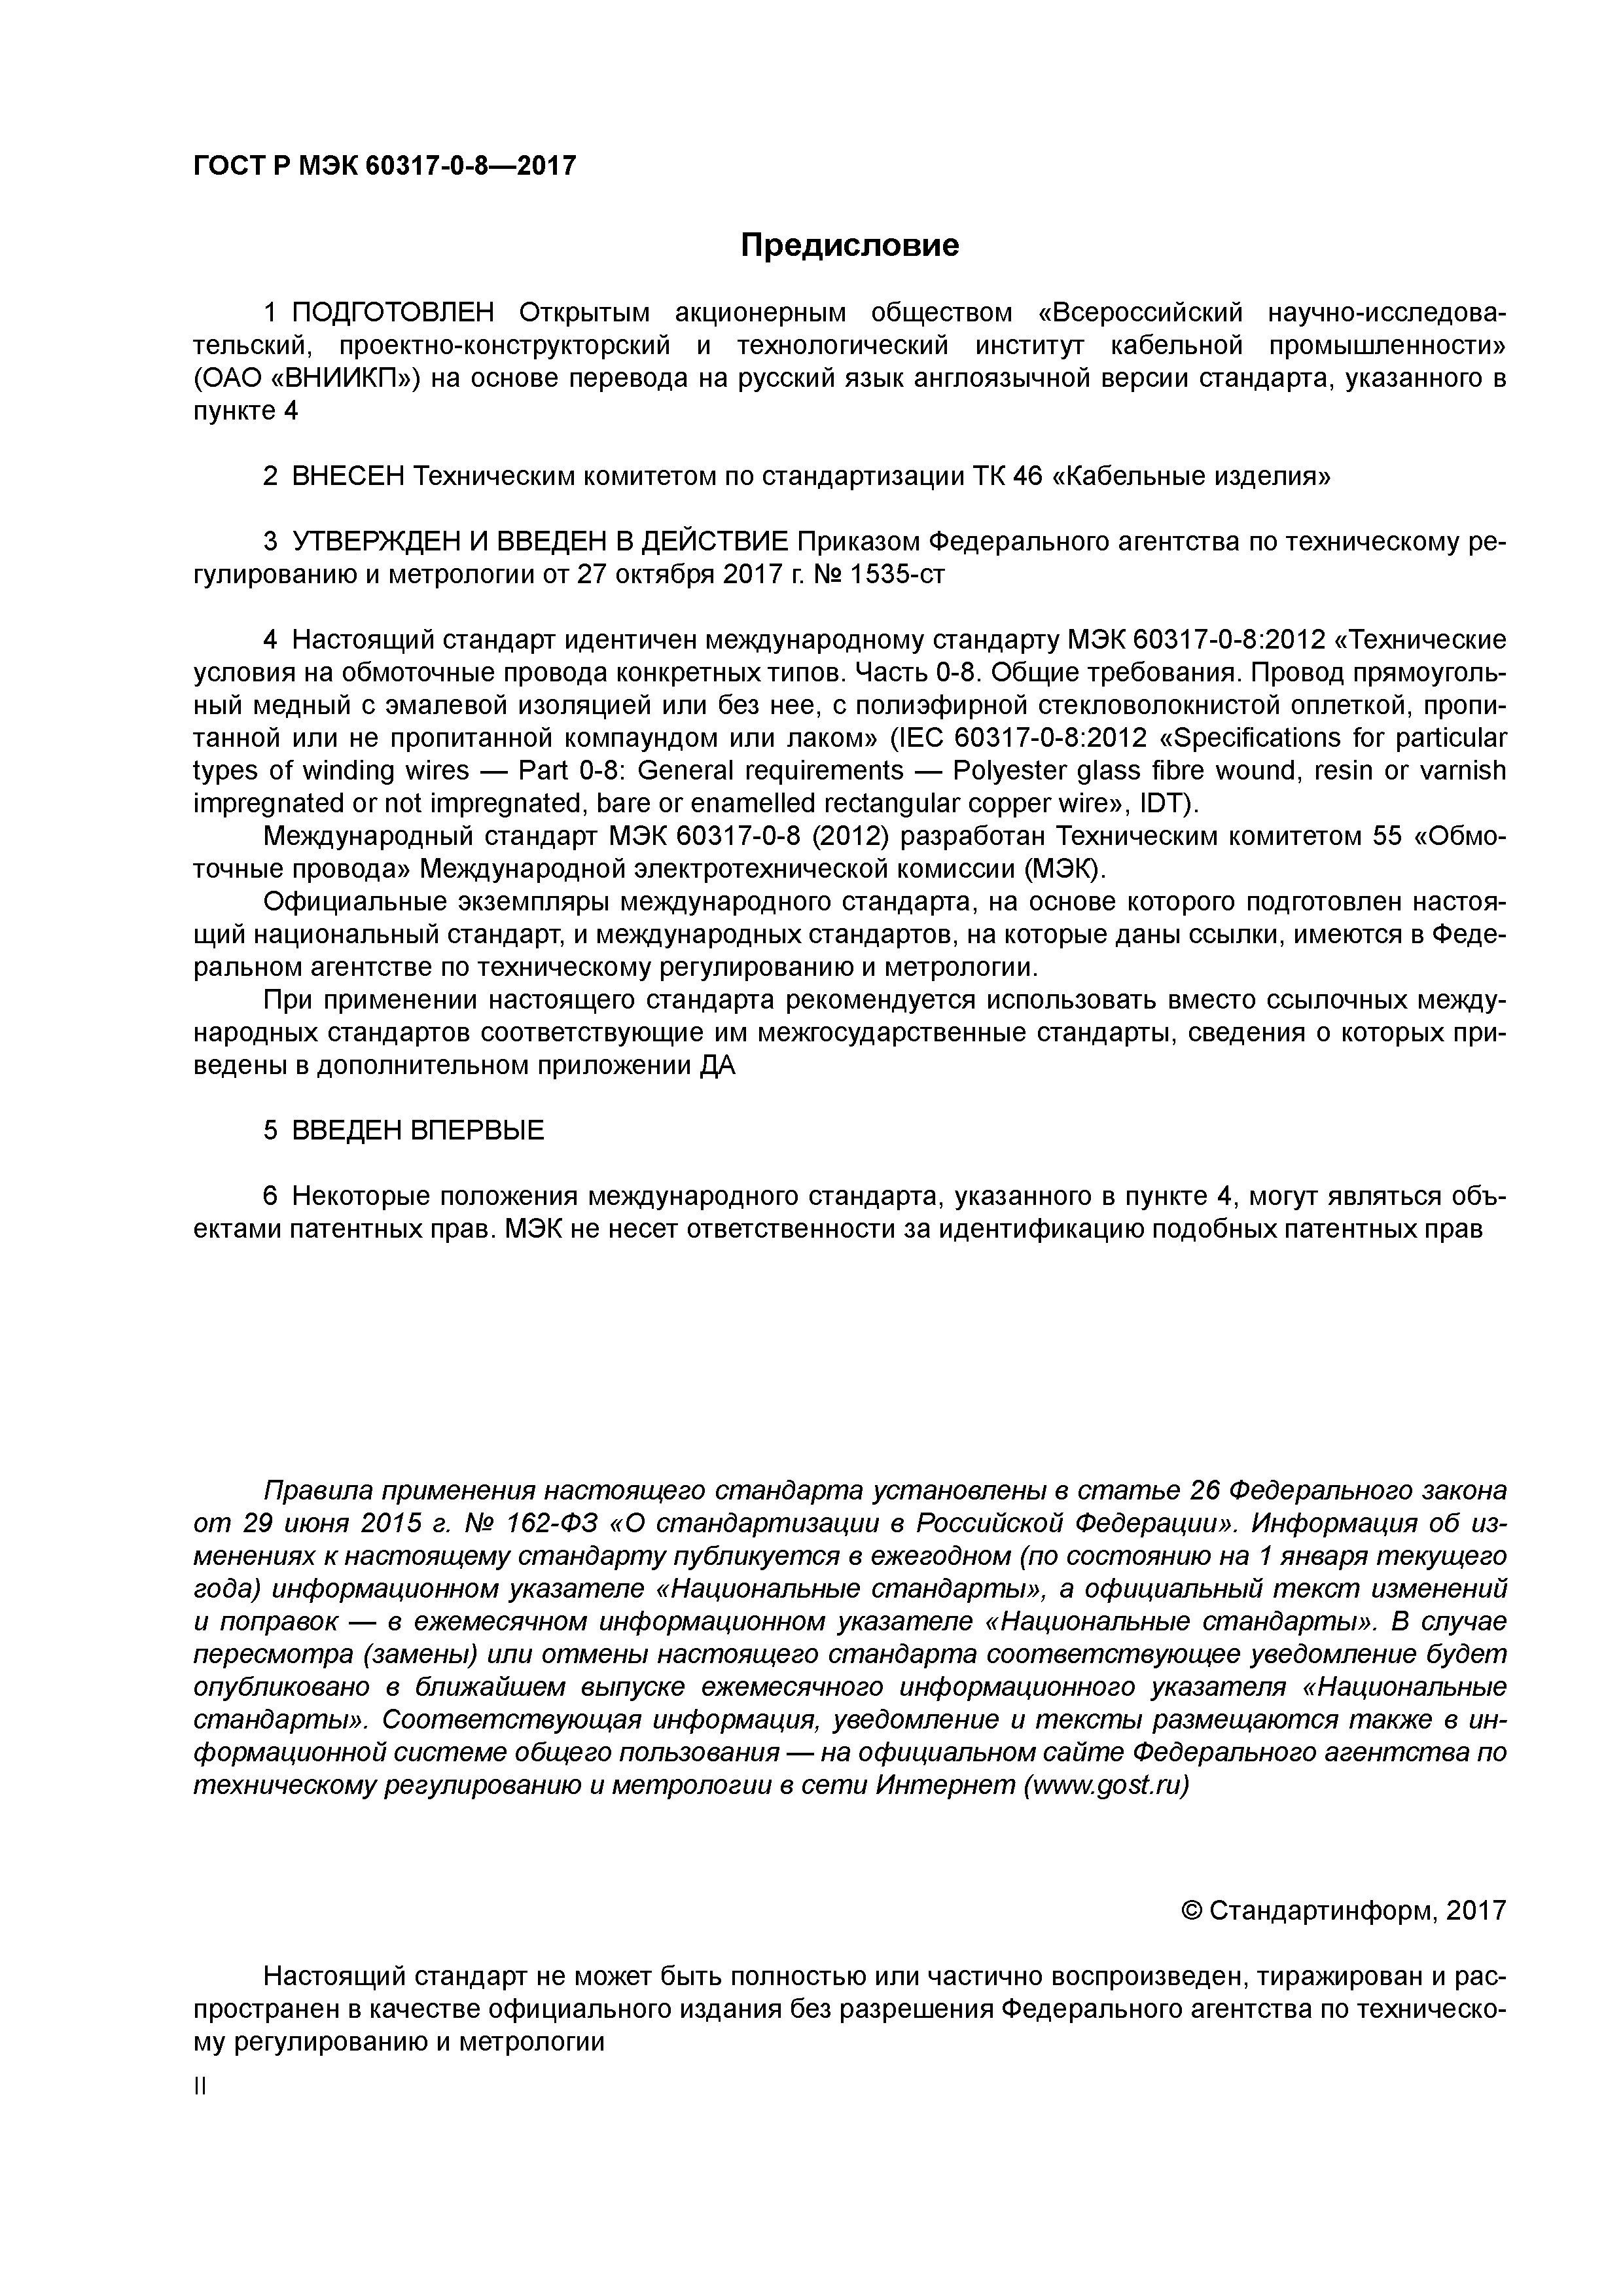 ГОСТ Р МЭК 60317-0-8-2017